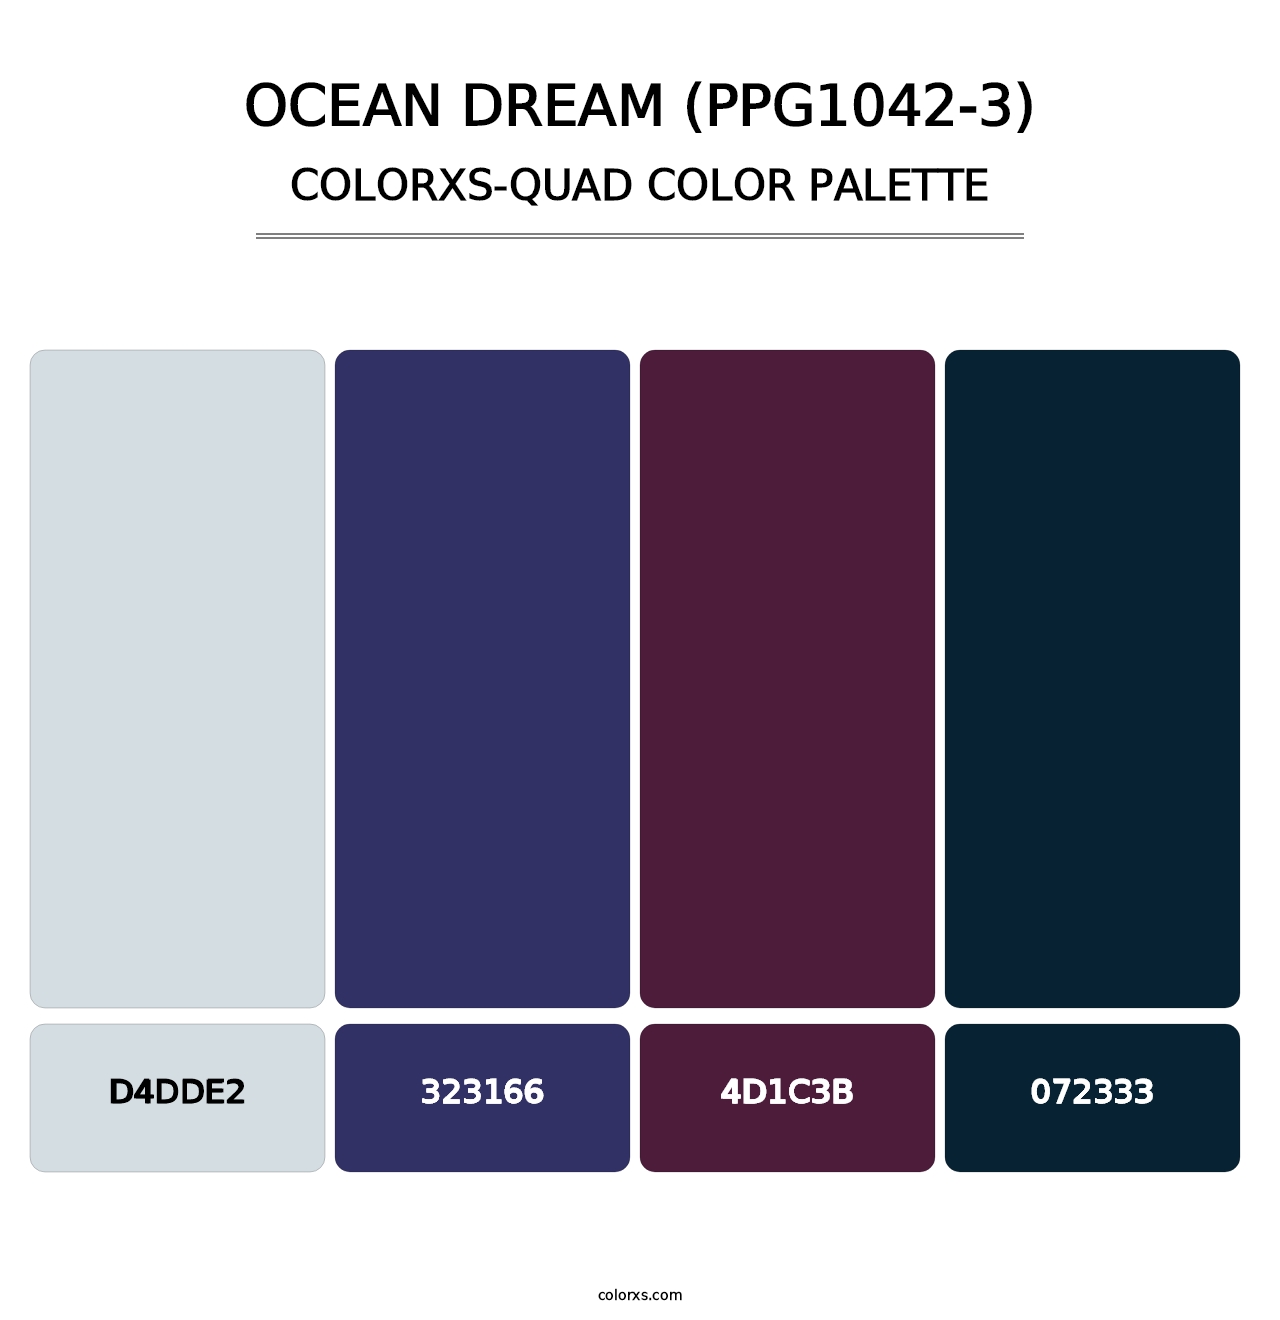 Ocean Dream (PPG1042-3) - Colorxs Quad Palette